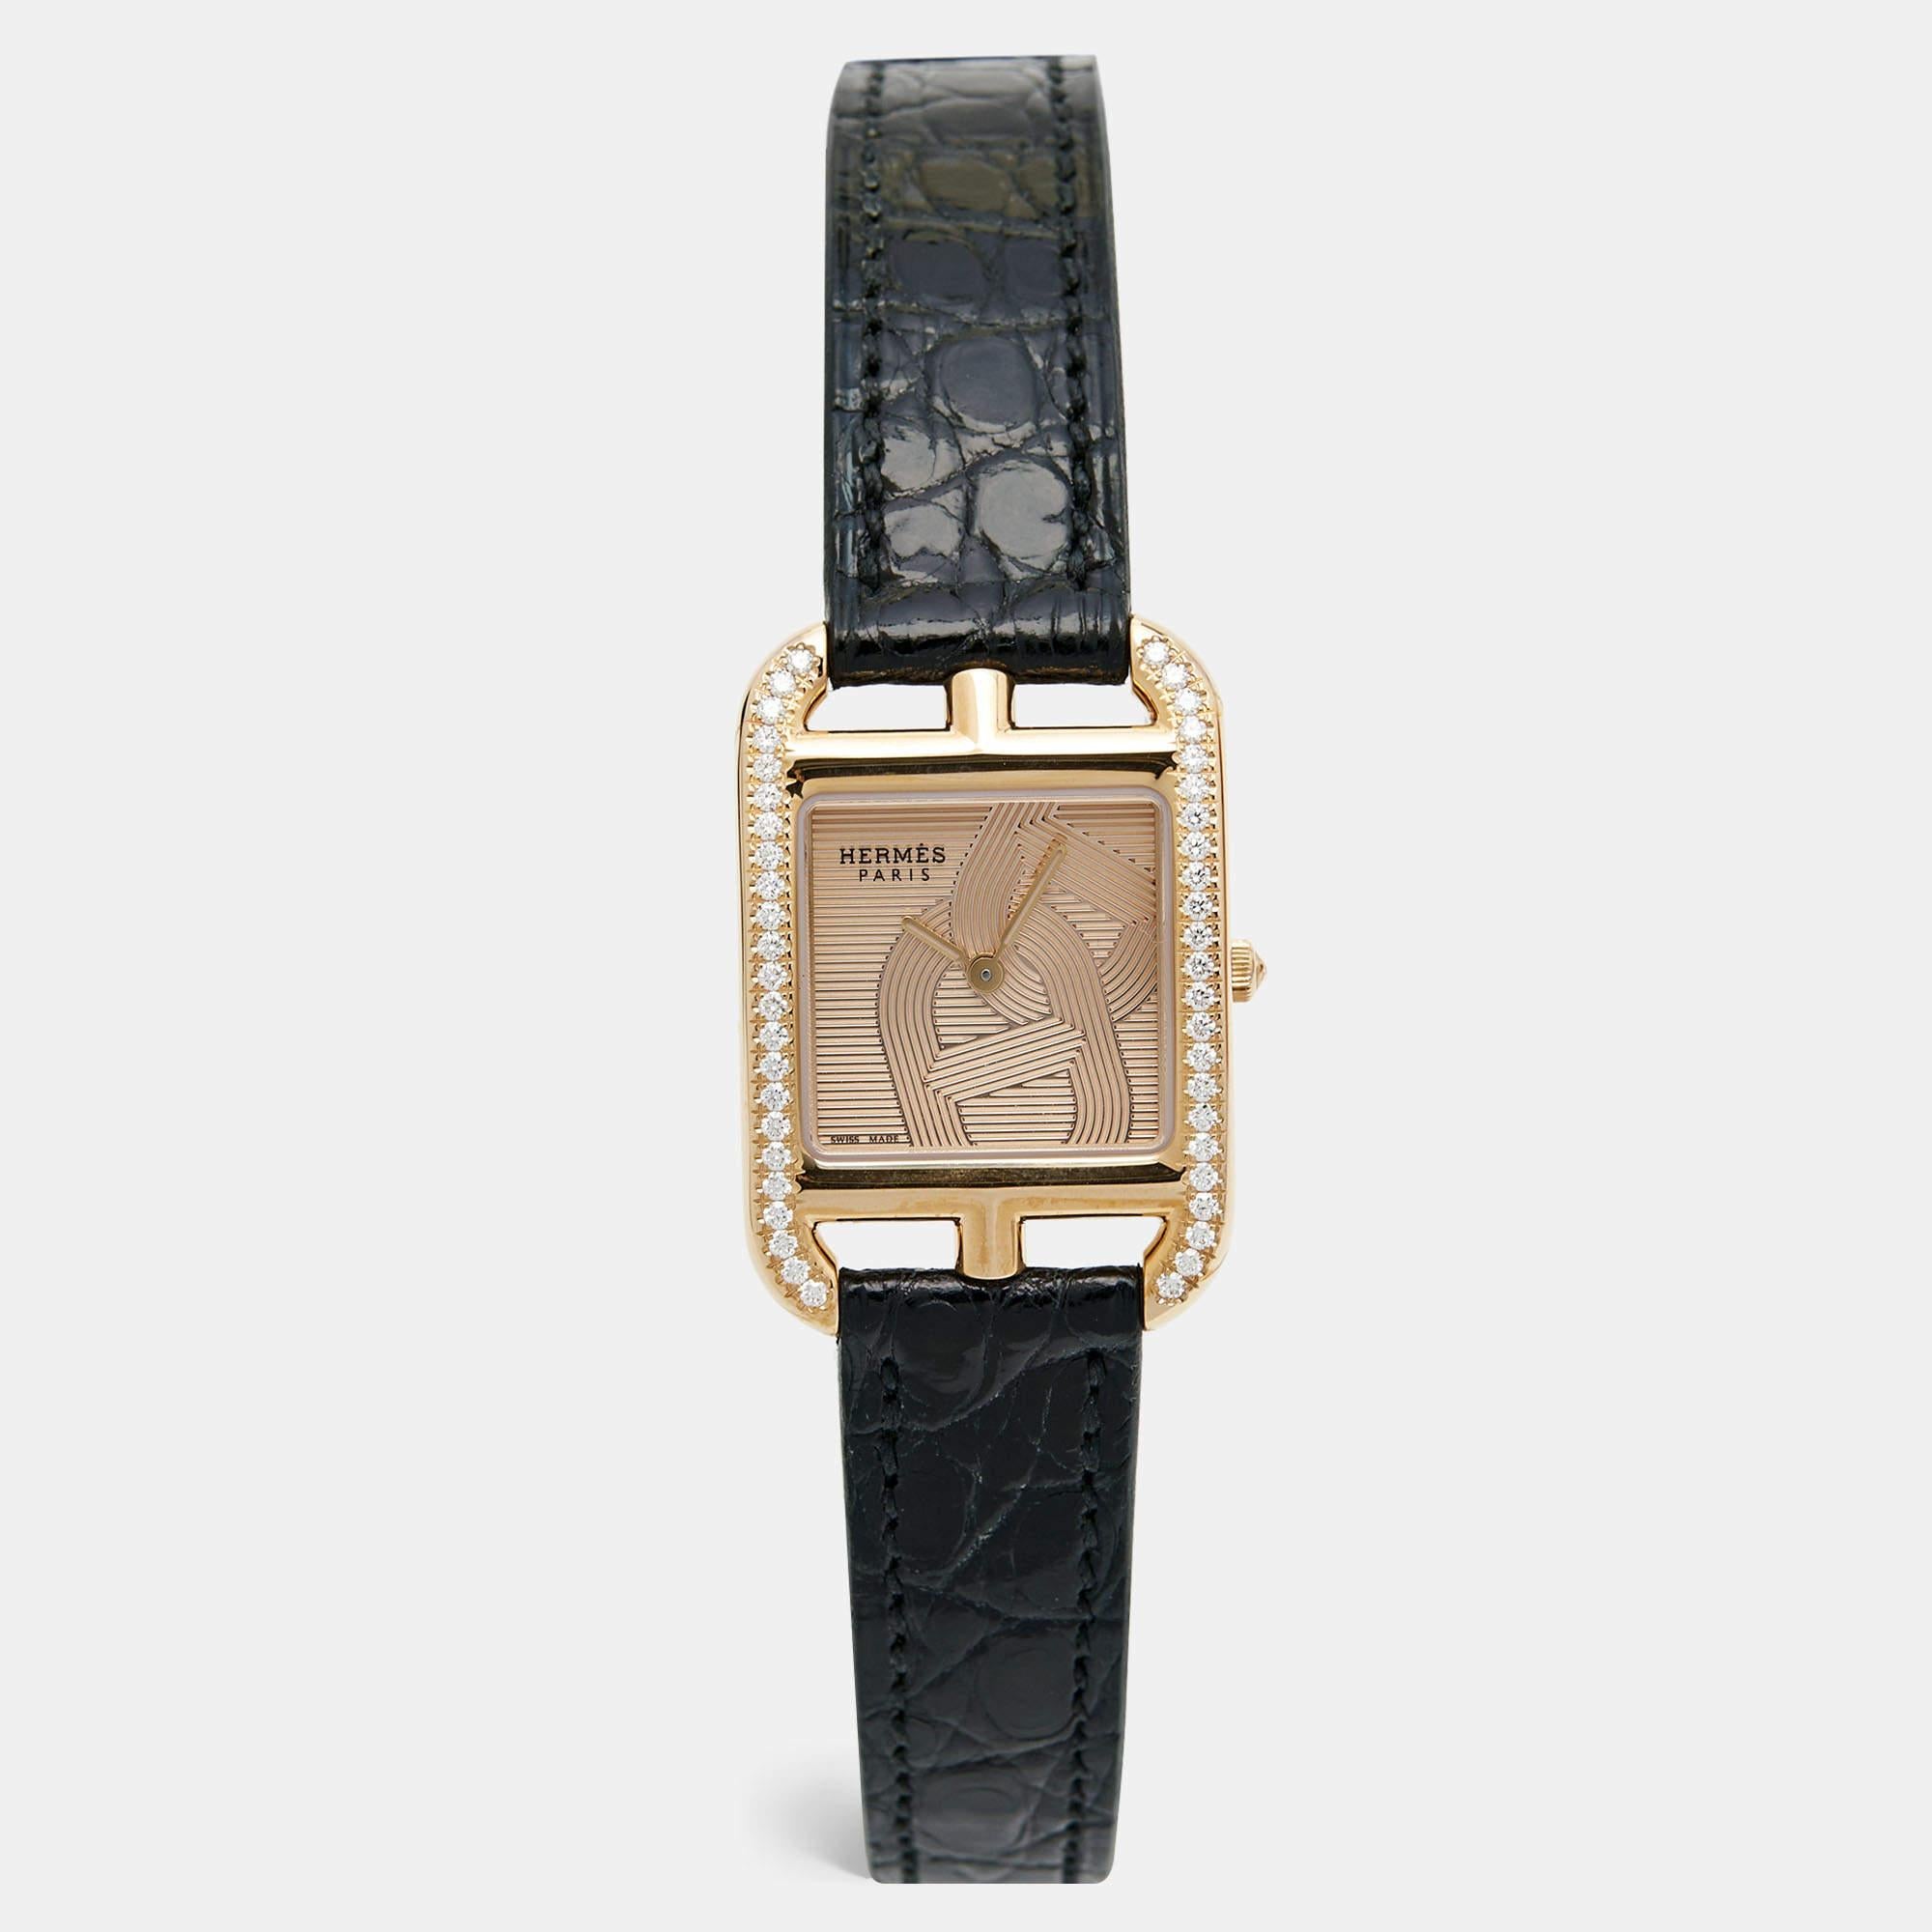 La montre-bracelet féminine Hermès Cape Cod CC1.371 est une luxueuse montre-bracelet qui respire l'élégance. Réalisé avec un grand souci du détail, son boîtier en or rose 18 carats est orné de diamants, ce qui lui confère une grande opulence. Le